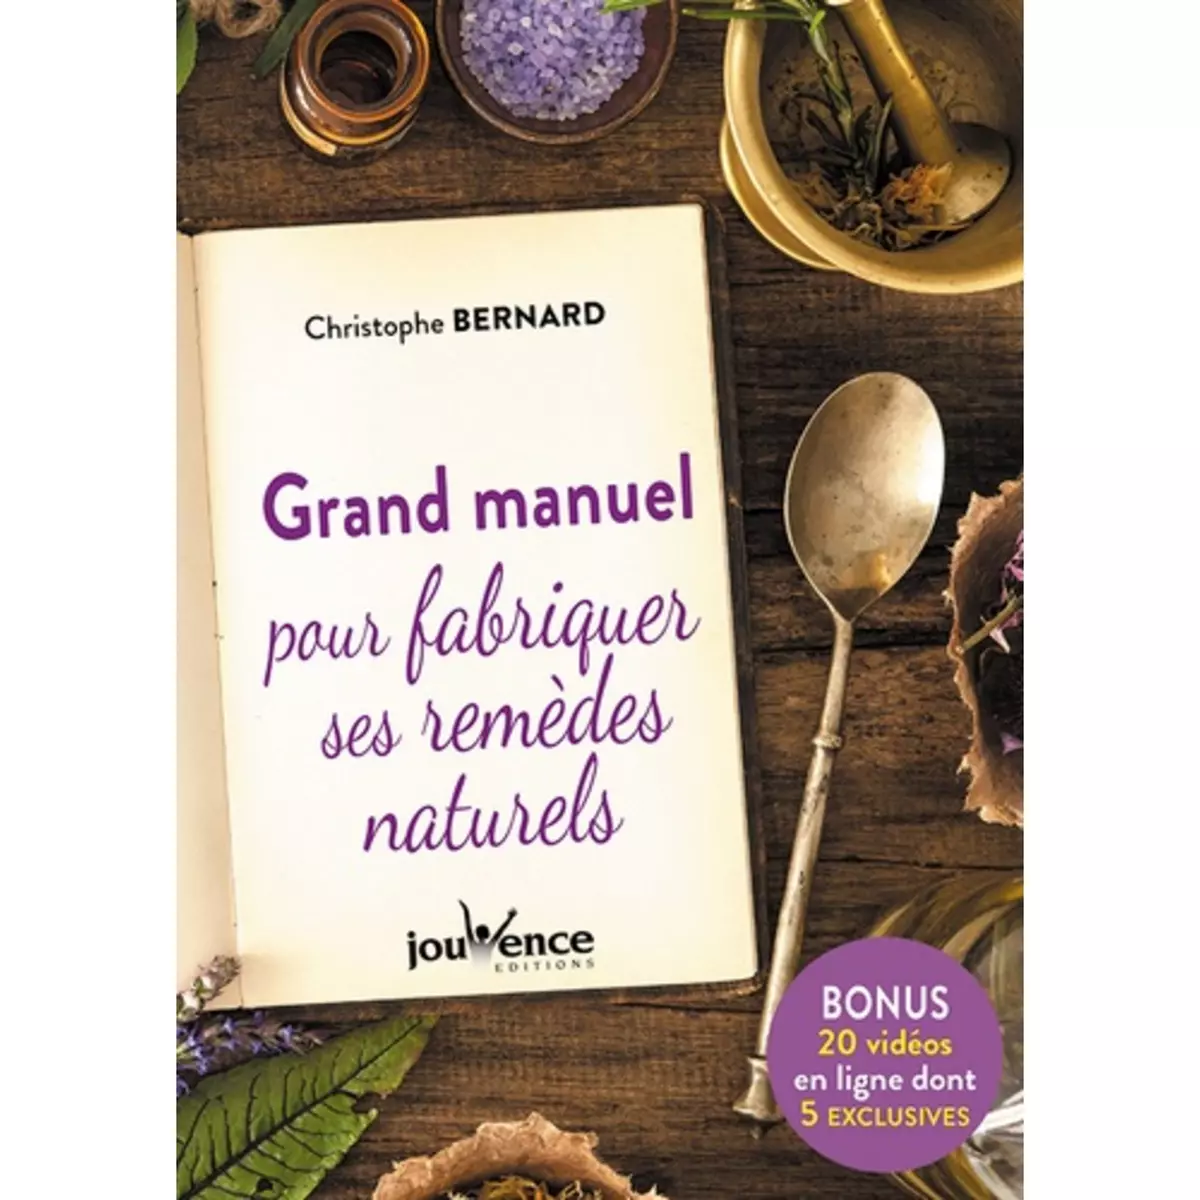  GRAND MANUEL POUR FABRIQUER SES REMEDES NATURELS, Bernard Christophe